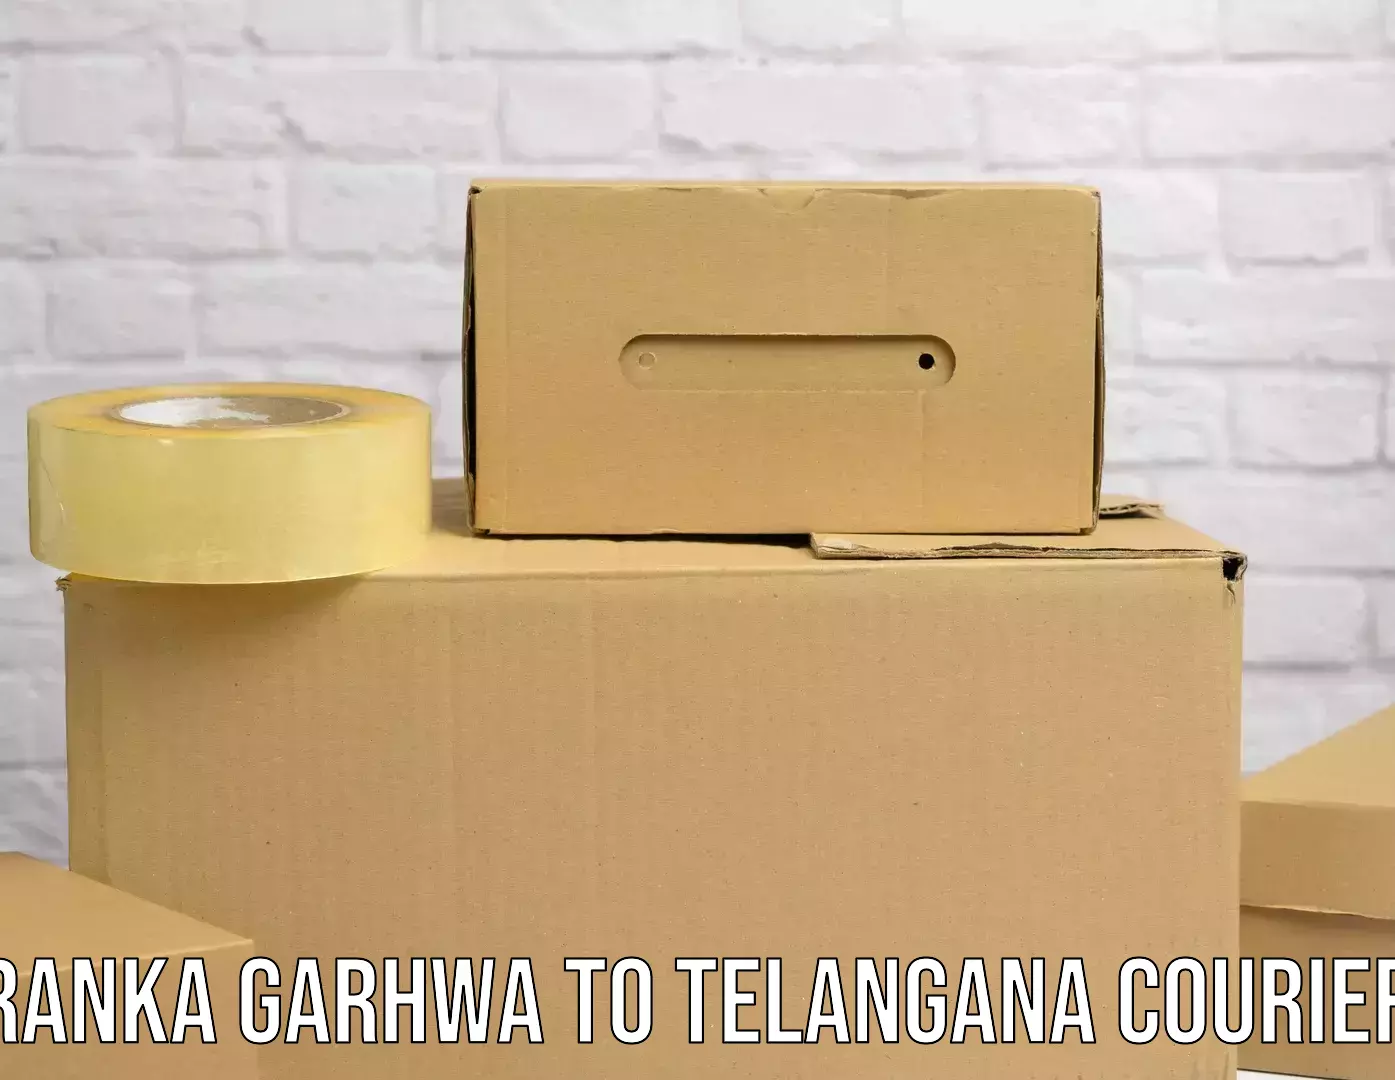 Courier service booking Ranka Garhwa to Manneguda